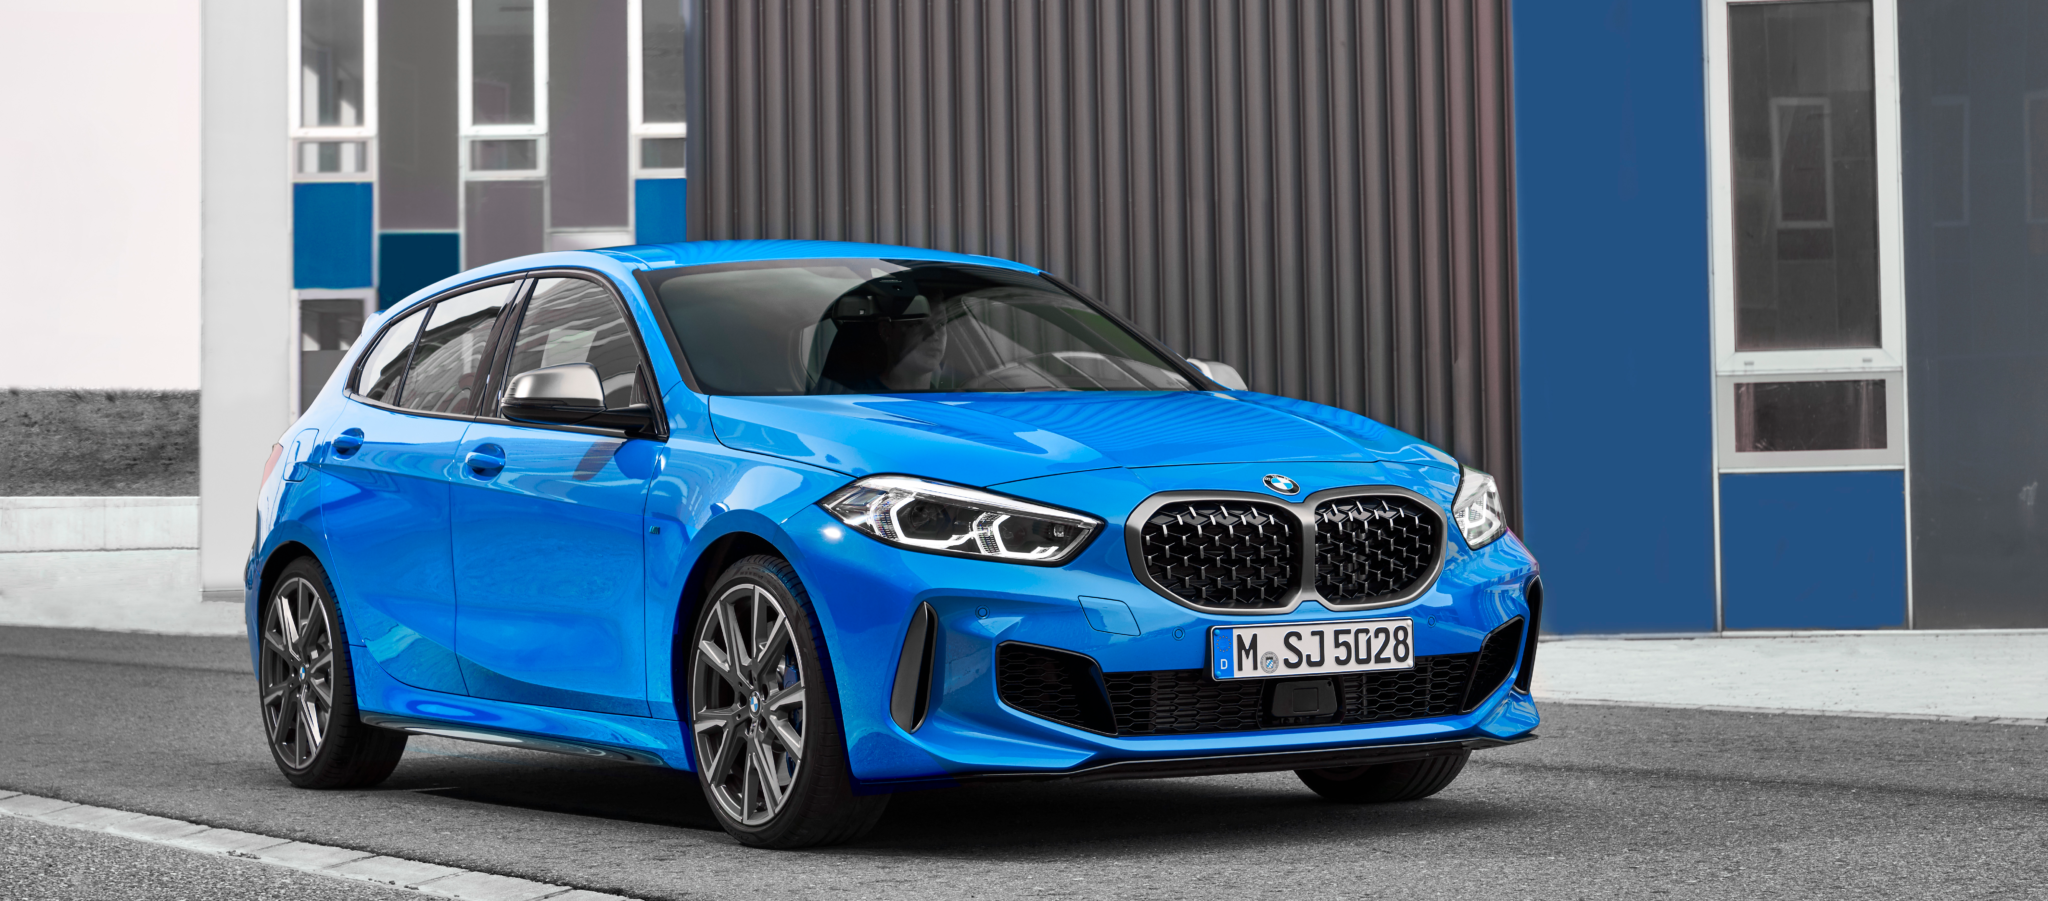 P90349578 highRes - El nuevo BMW Serie 1 ya está a la venta en España: desde 28.800 €